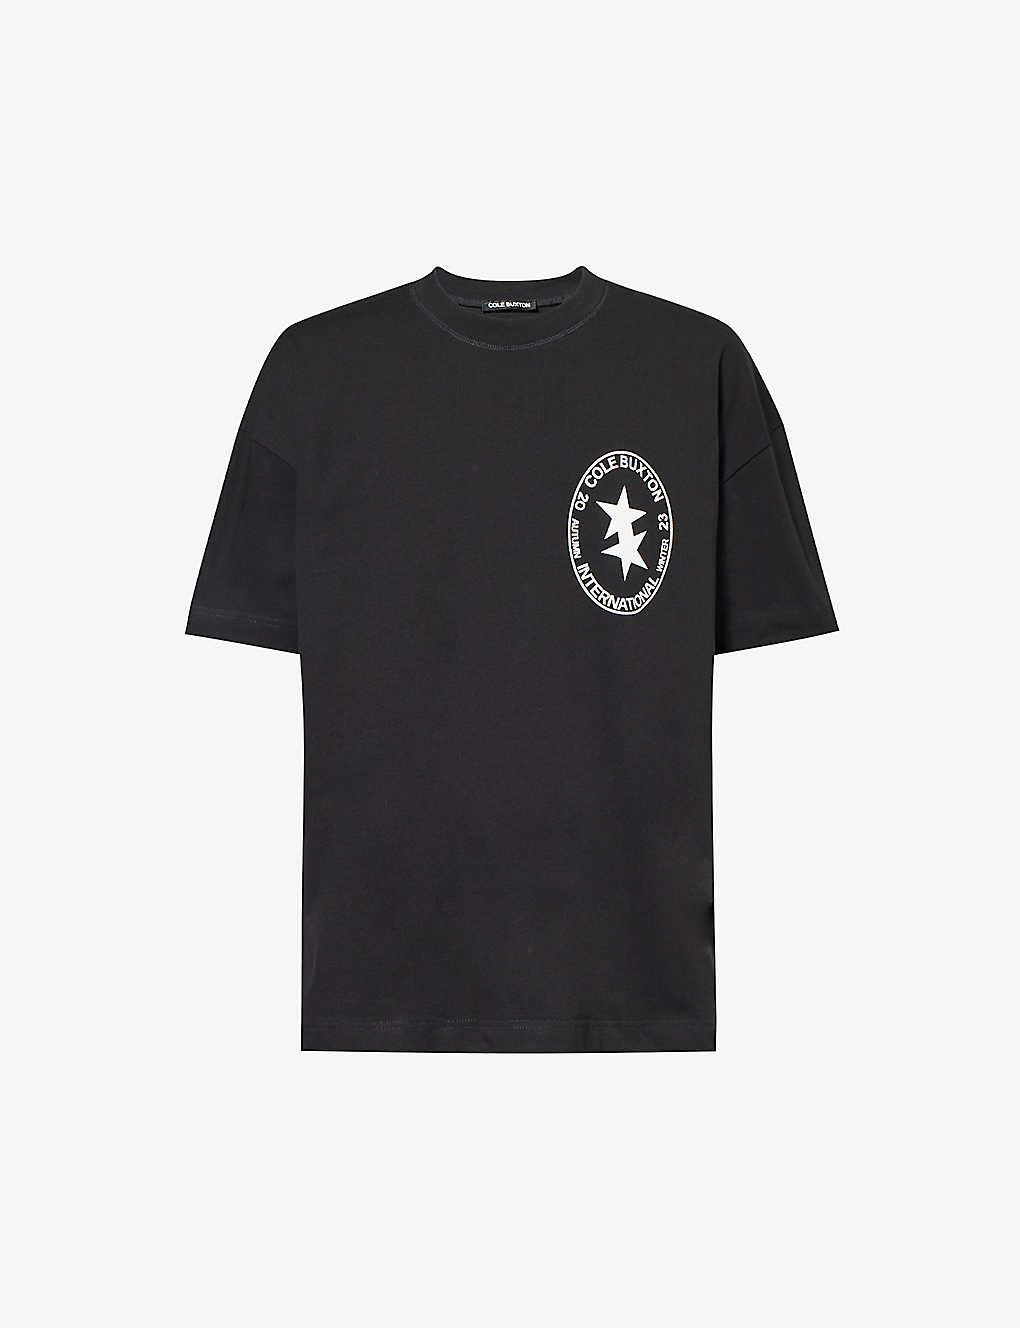 Cole Buxton Mens Vintage Black Cb Crest Graphic-print Cotton-jersey T-shirt